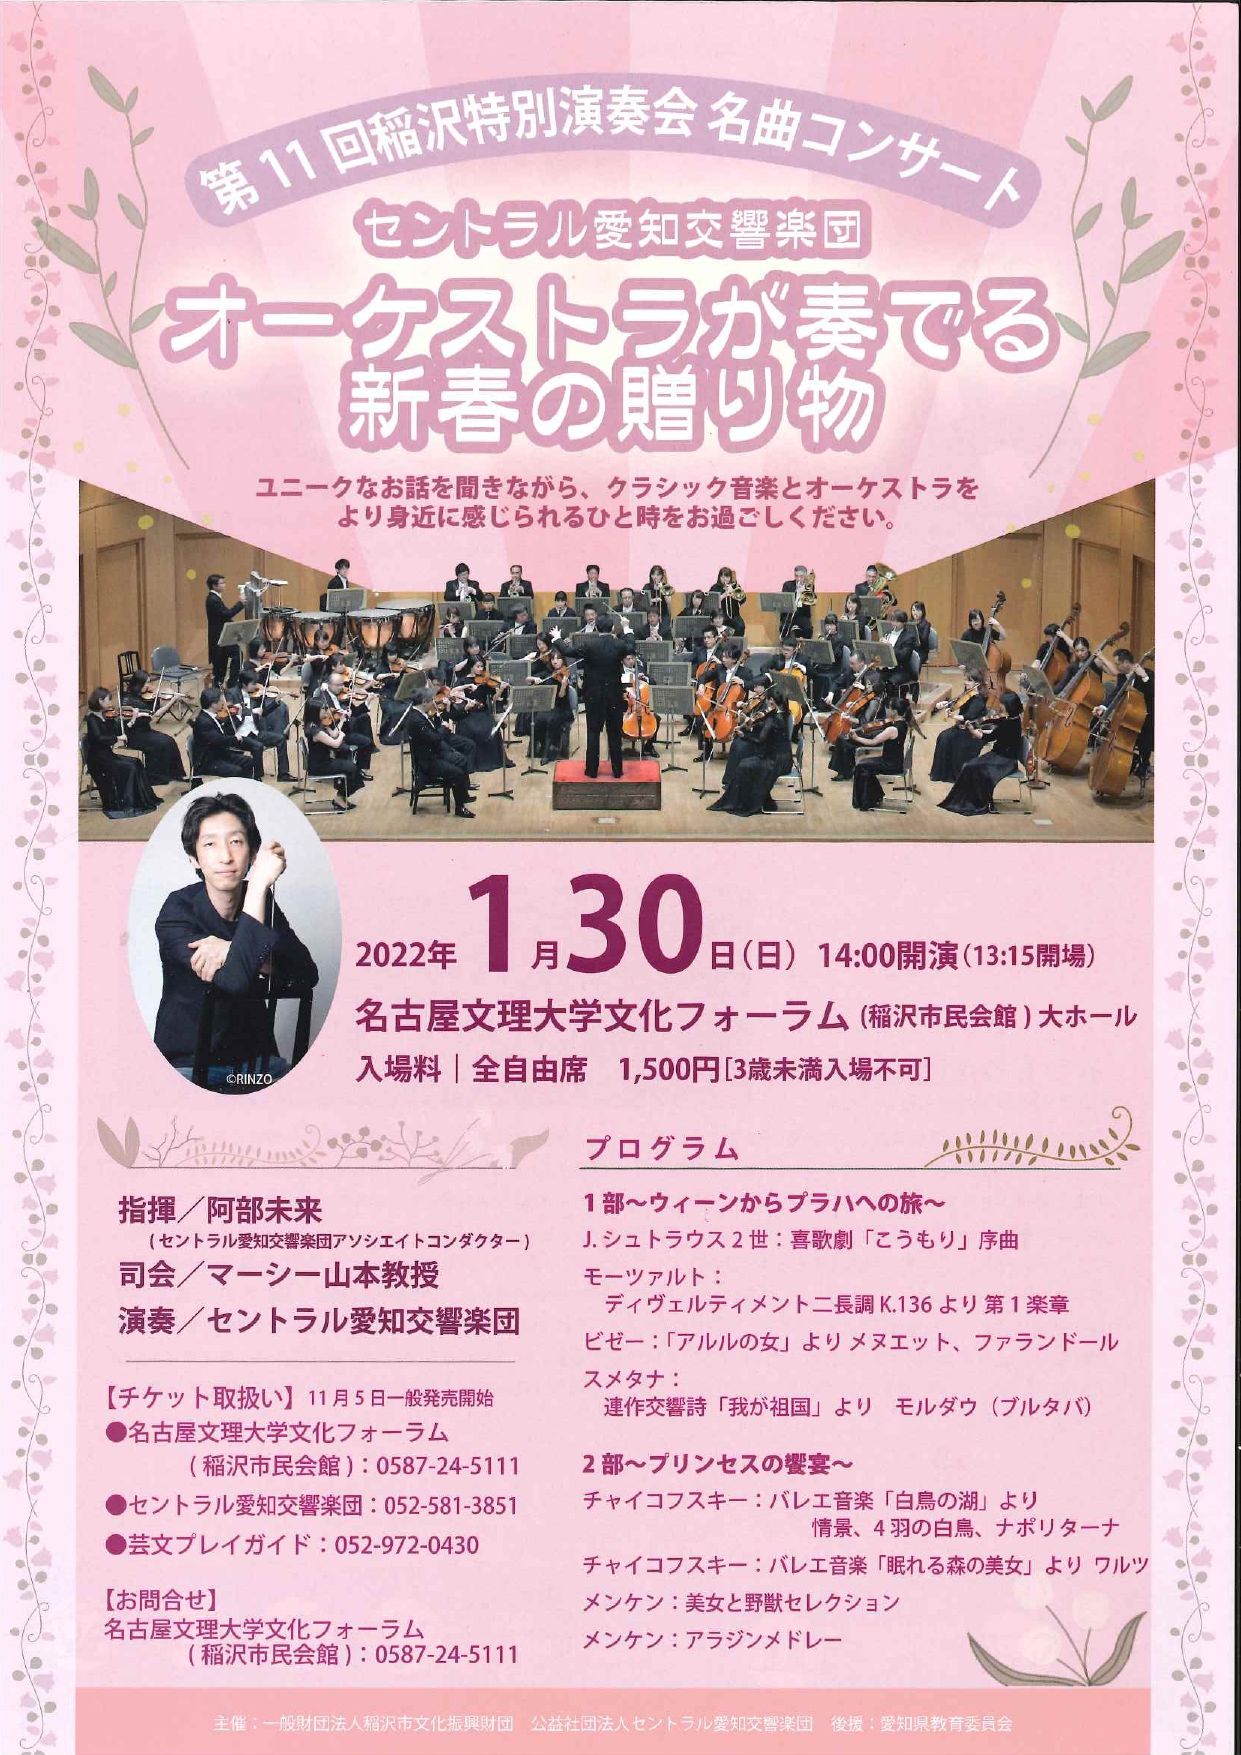 第11回稲沢特別演奏会 名曲コンサート「 オーケストラが奏でる新春の贈り物」